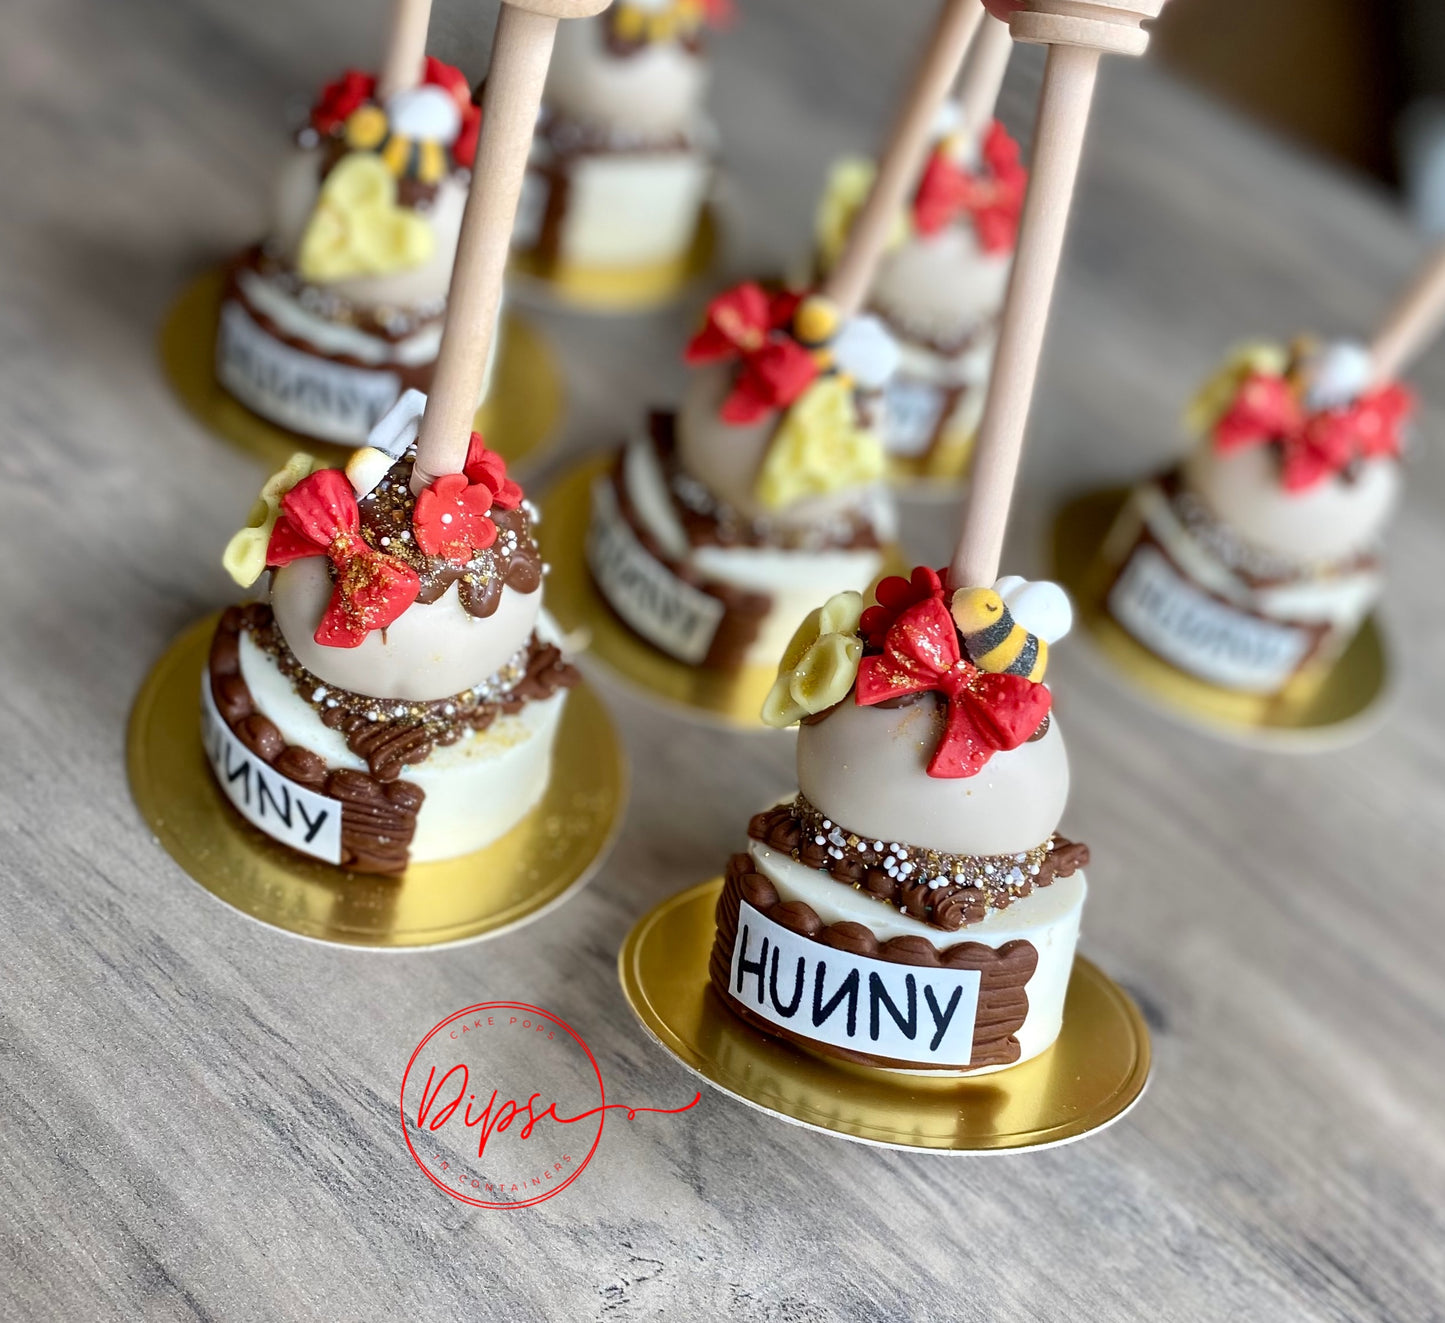 Hunny Pot Cake pop/Oreo Combo Treats